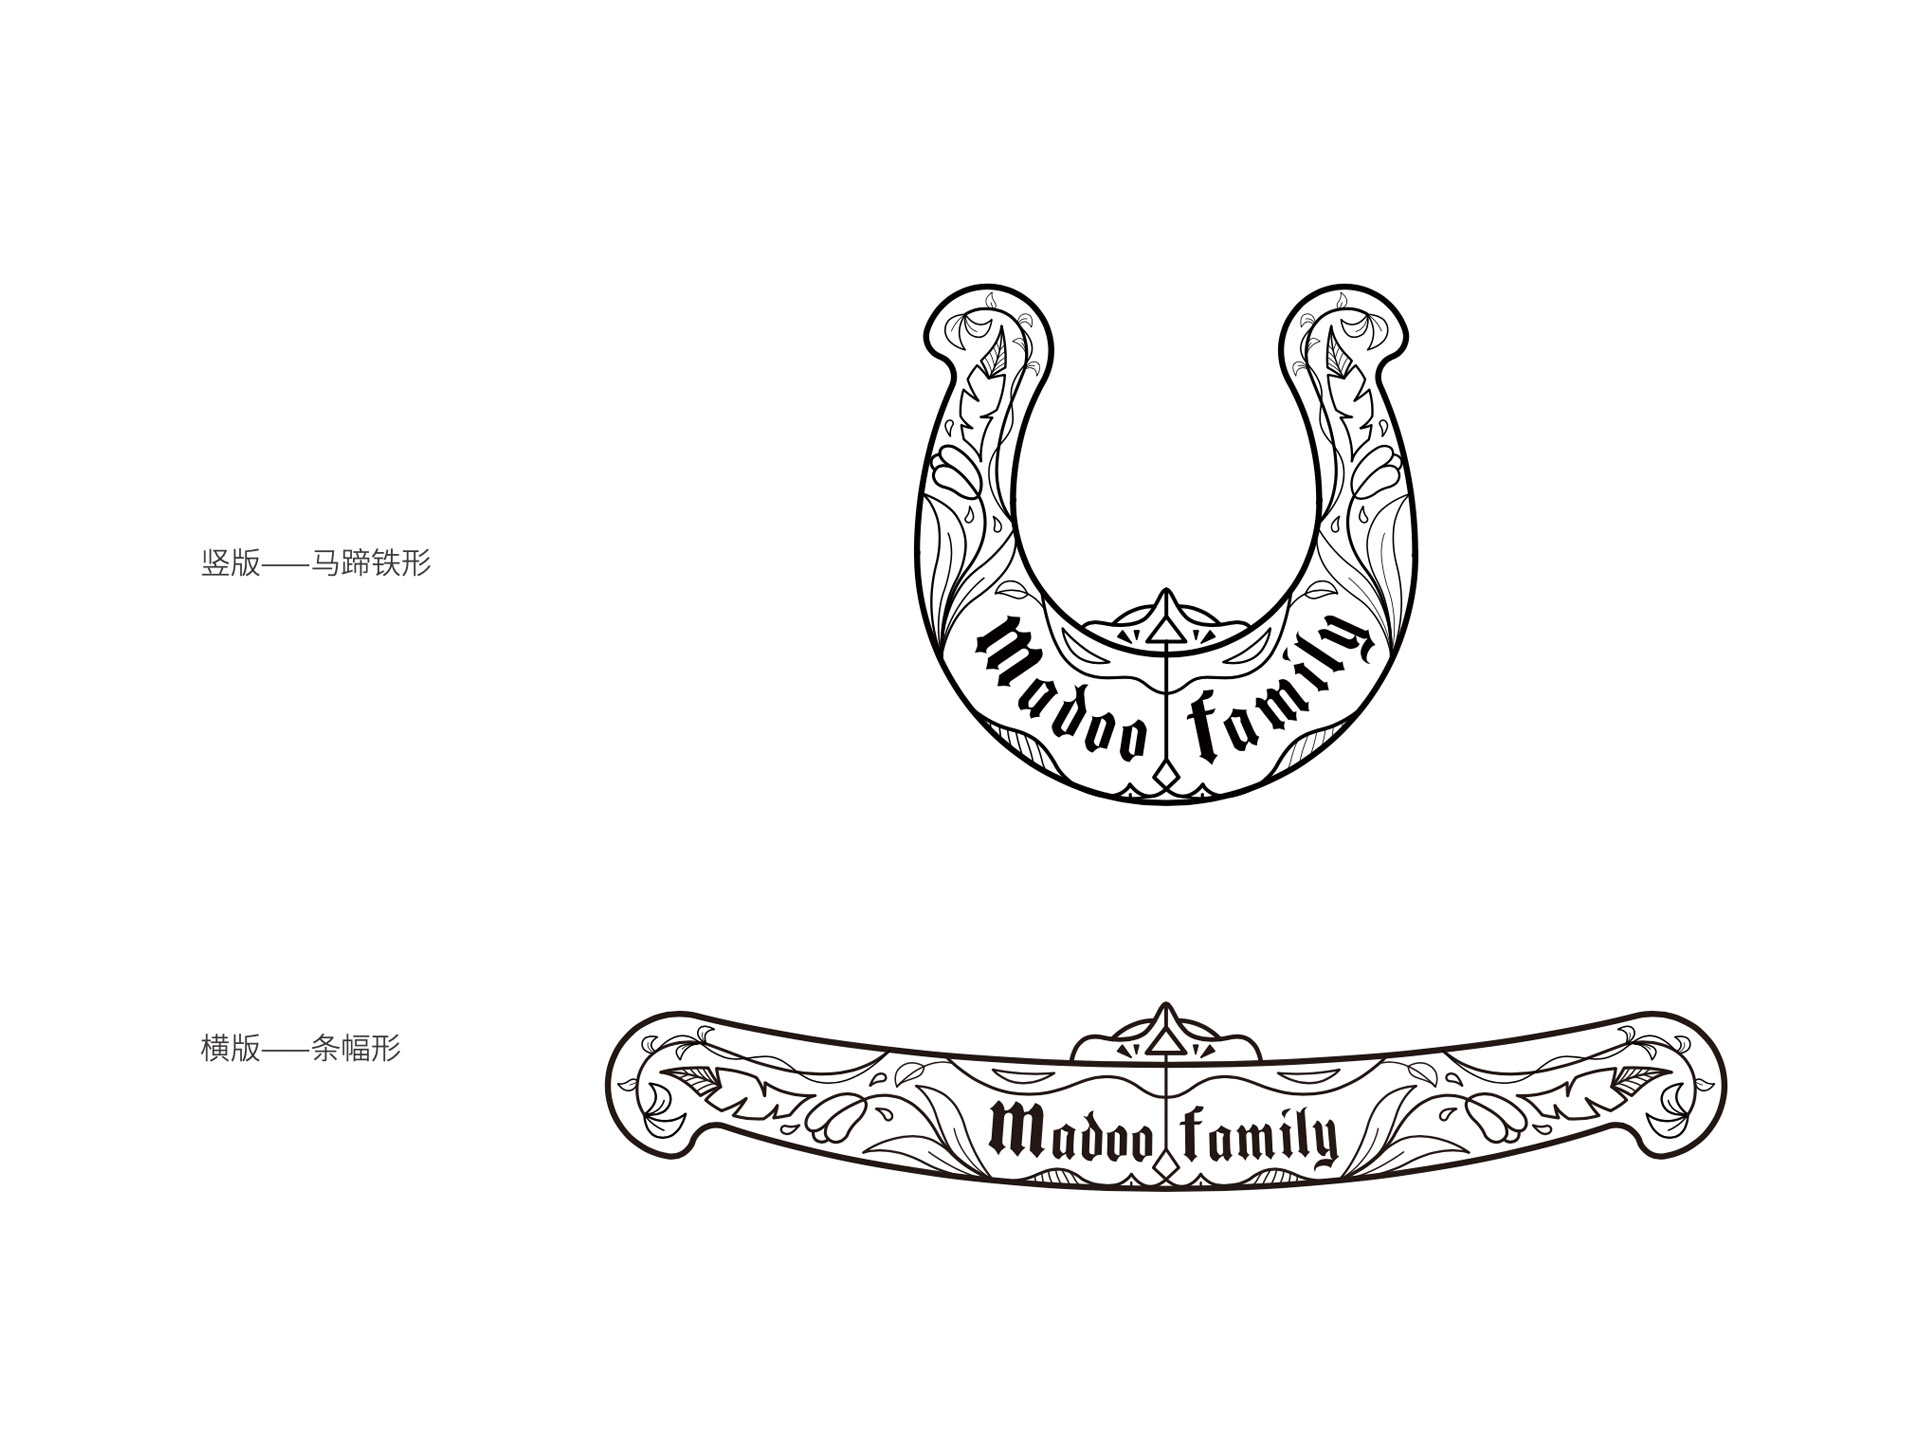 logo图案,logo设计,logo字体设计,字体设计,英文字体设计,家族族徽设计